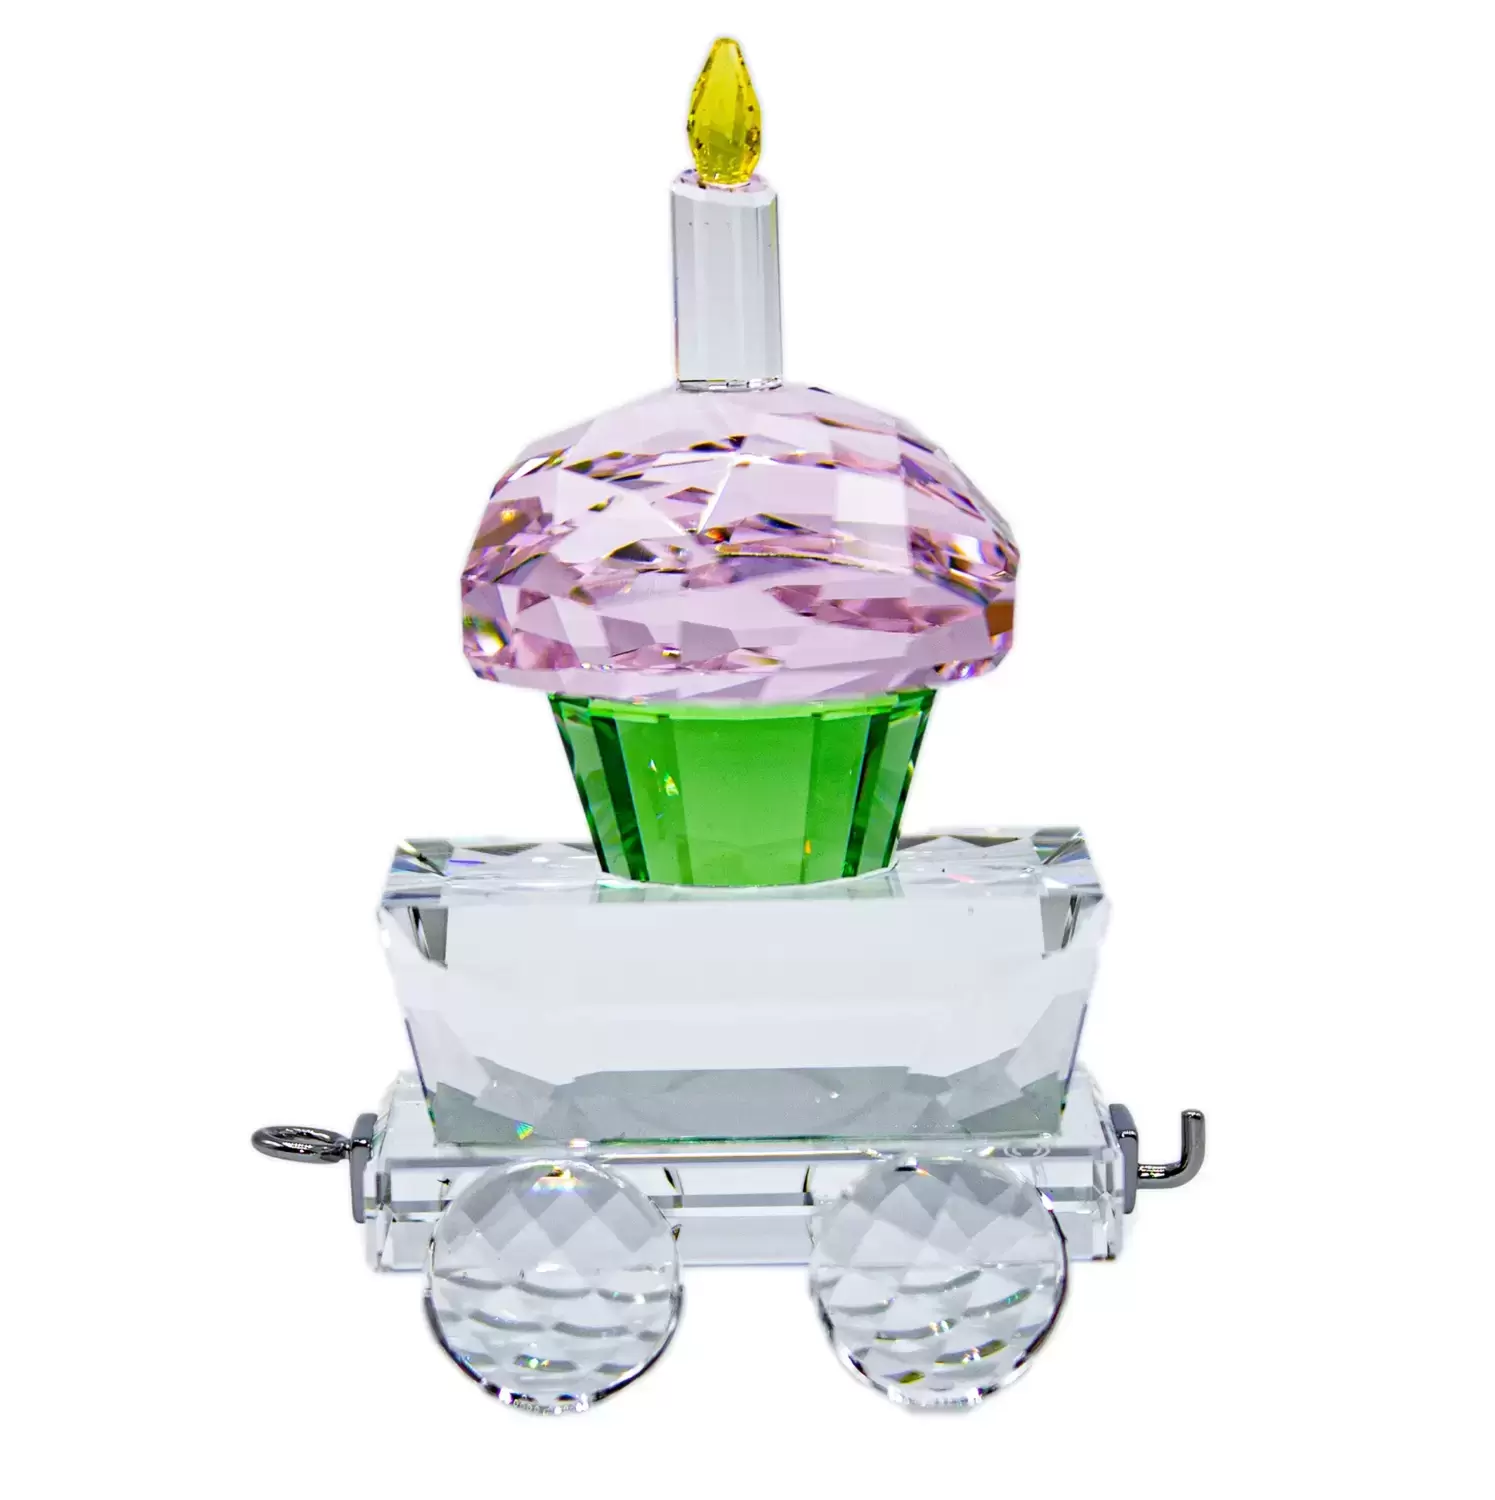 Swarovski Crystal Figures - Wagon Cupcake